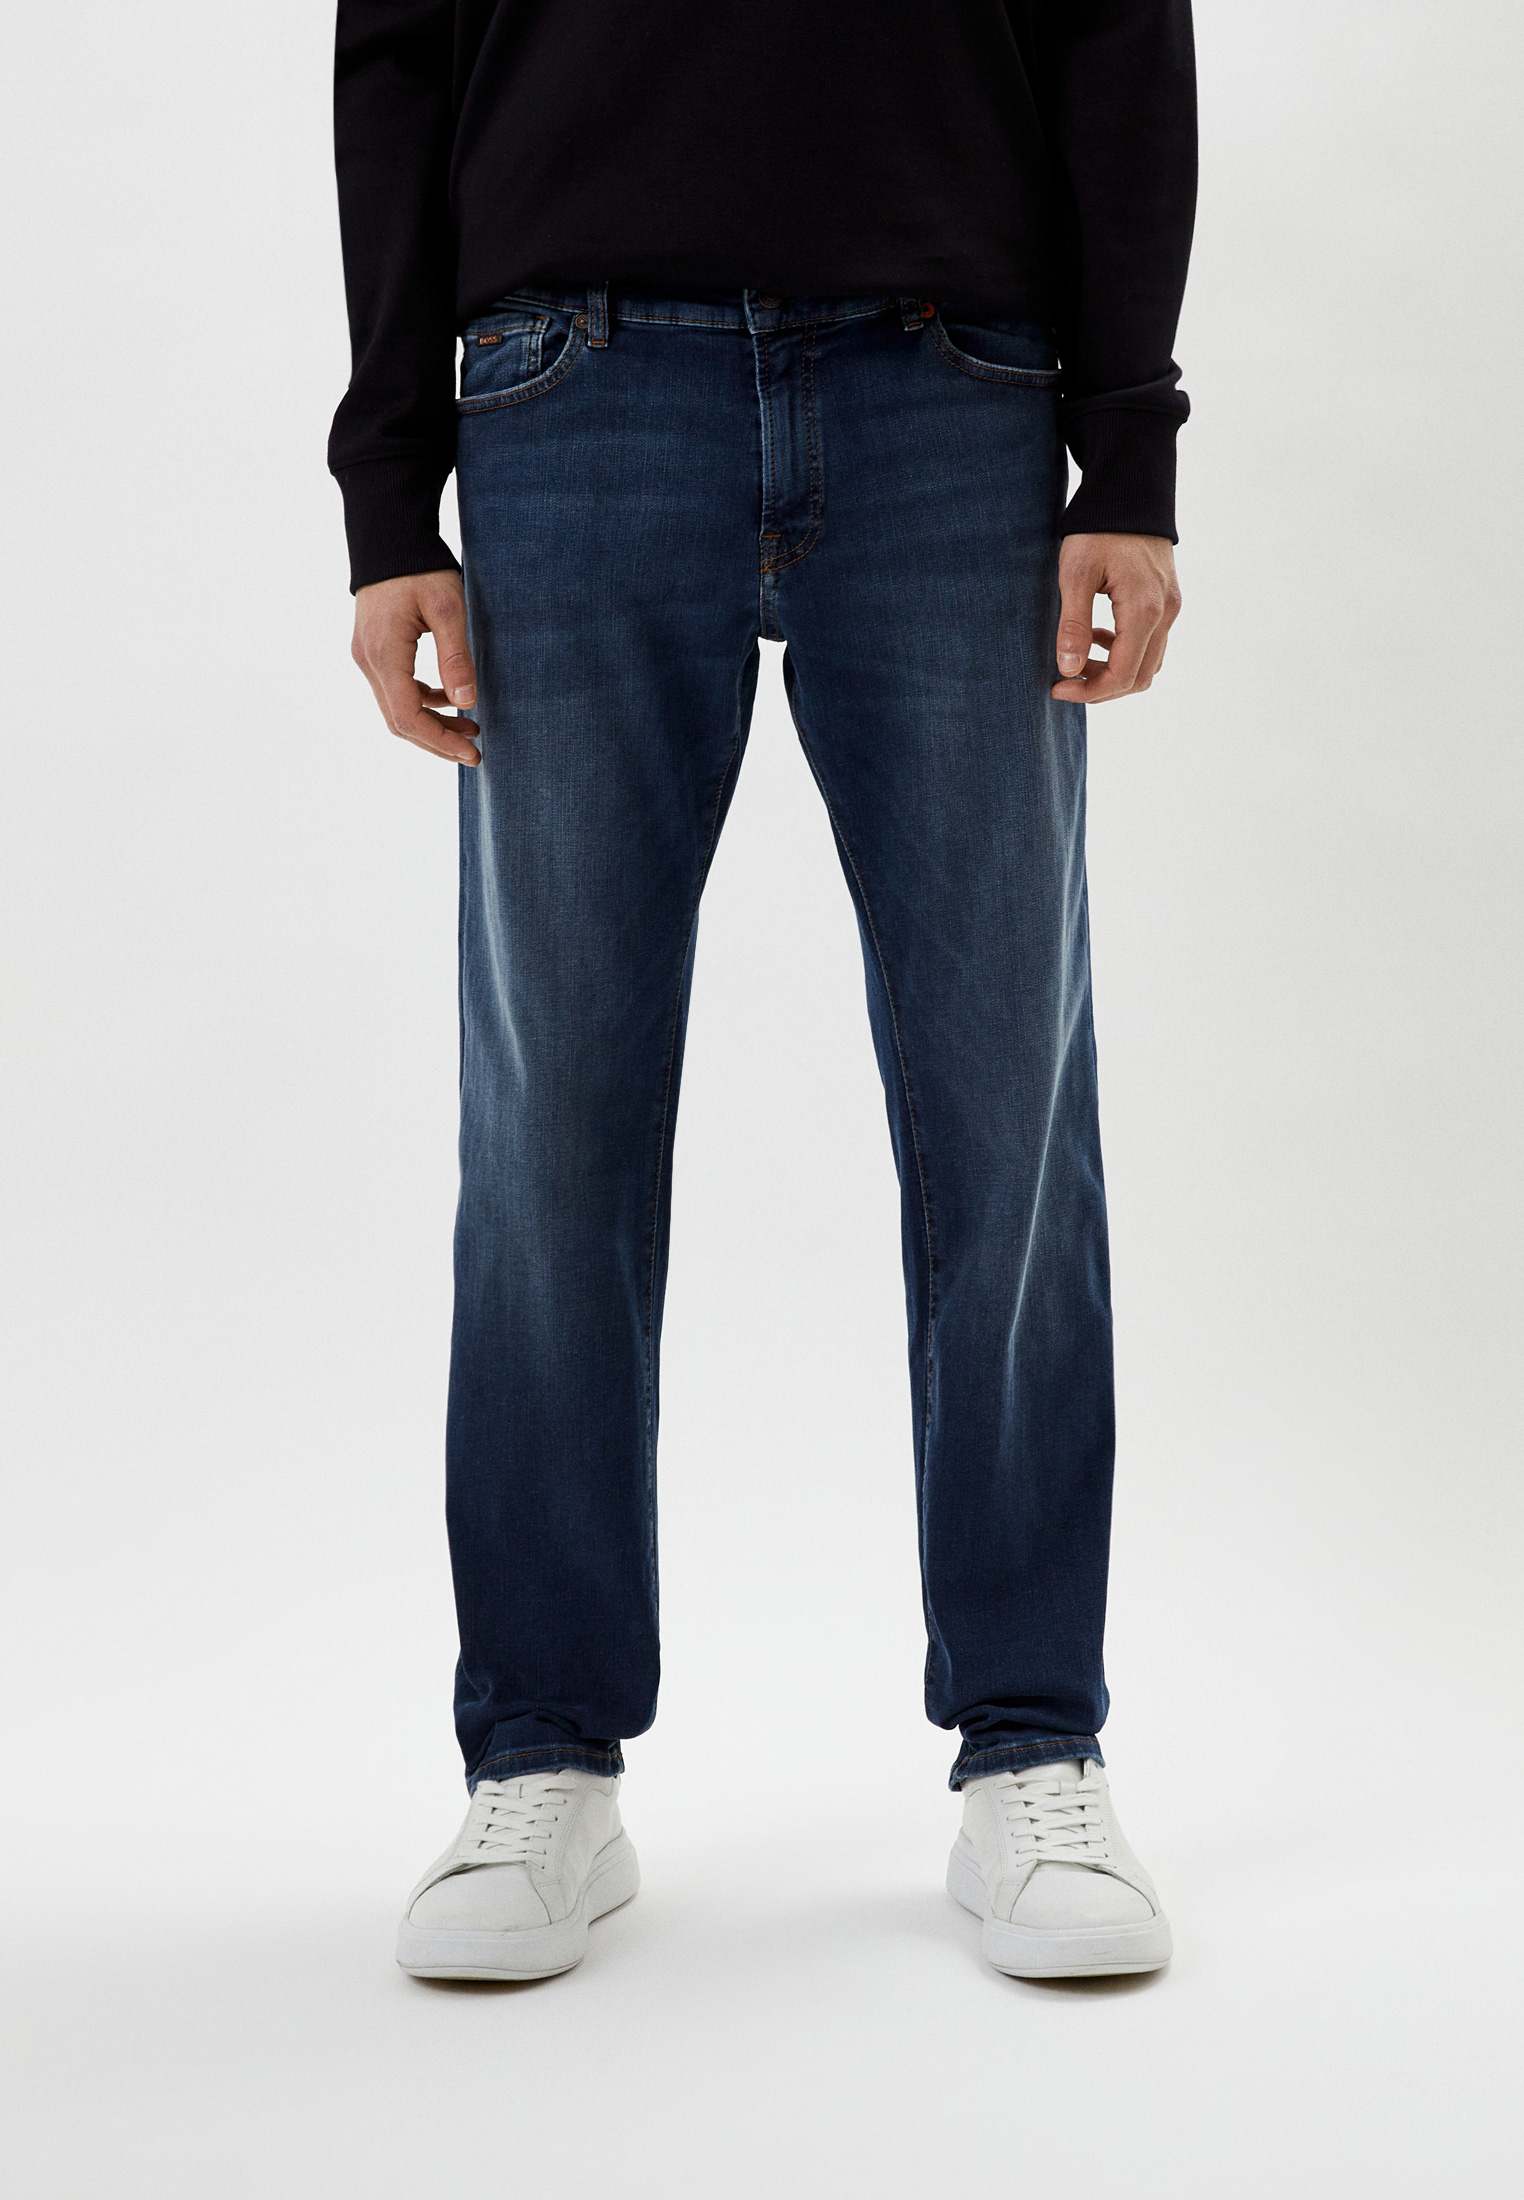 Мужские зауженные джинсы Boss (Босс) 50484250: изображение 1